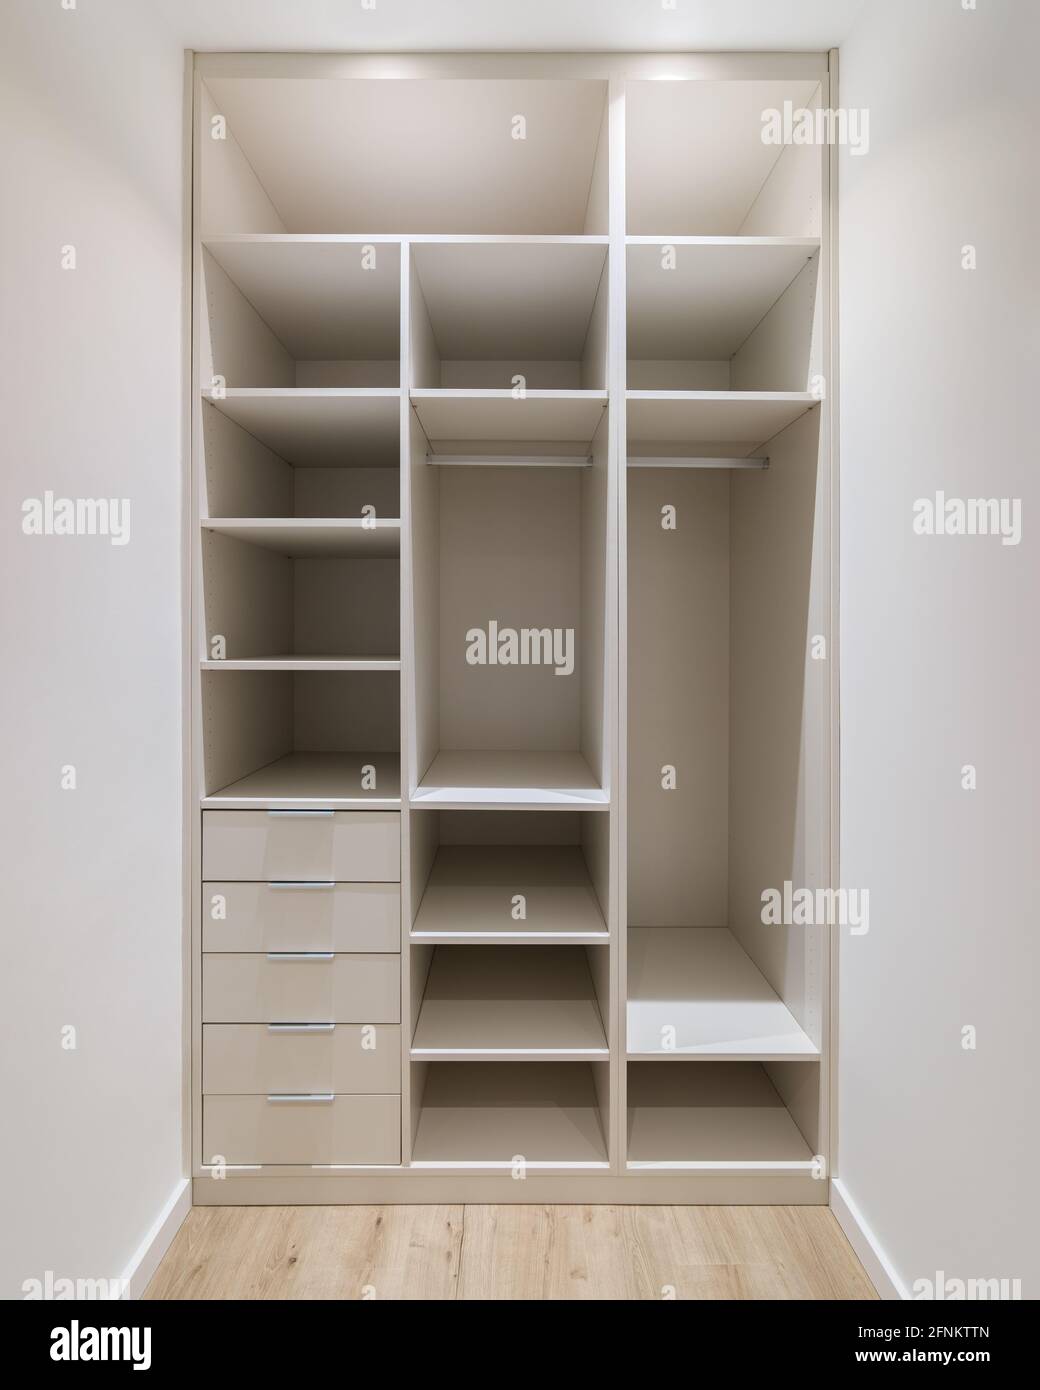 Neue Einbaumöbel in einem kleinen Ankleidezimmer. Moderner Abstellraum mit  Kleiderschrank, vielen Regalen und Schubladen Stockfotografie - Alamy